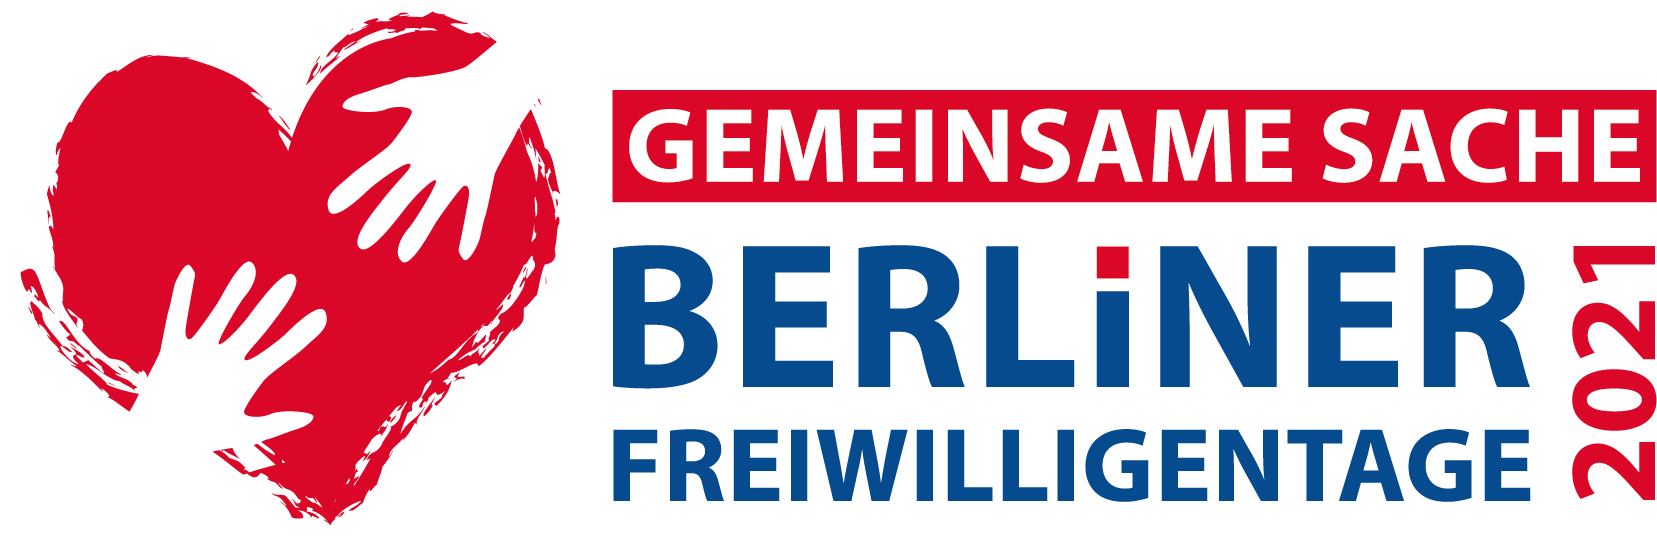 Gemeinsame Sache – Berliner Freiwilligentage